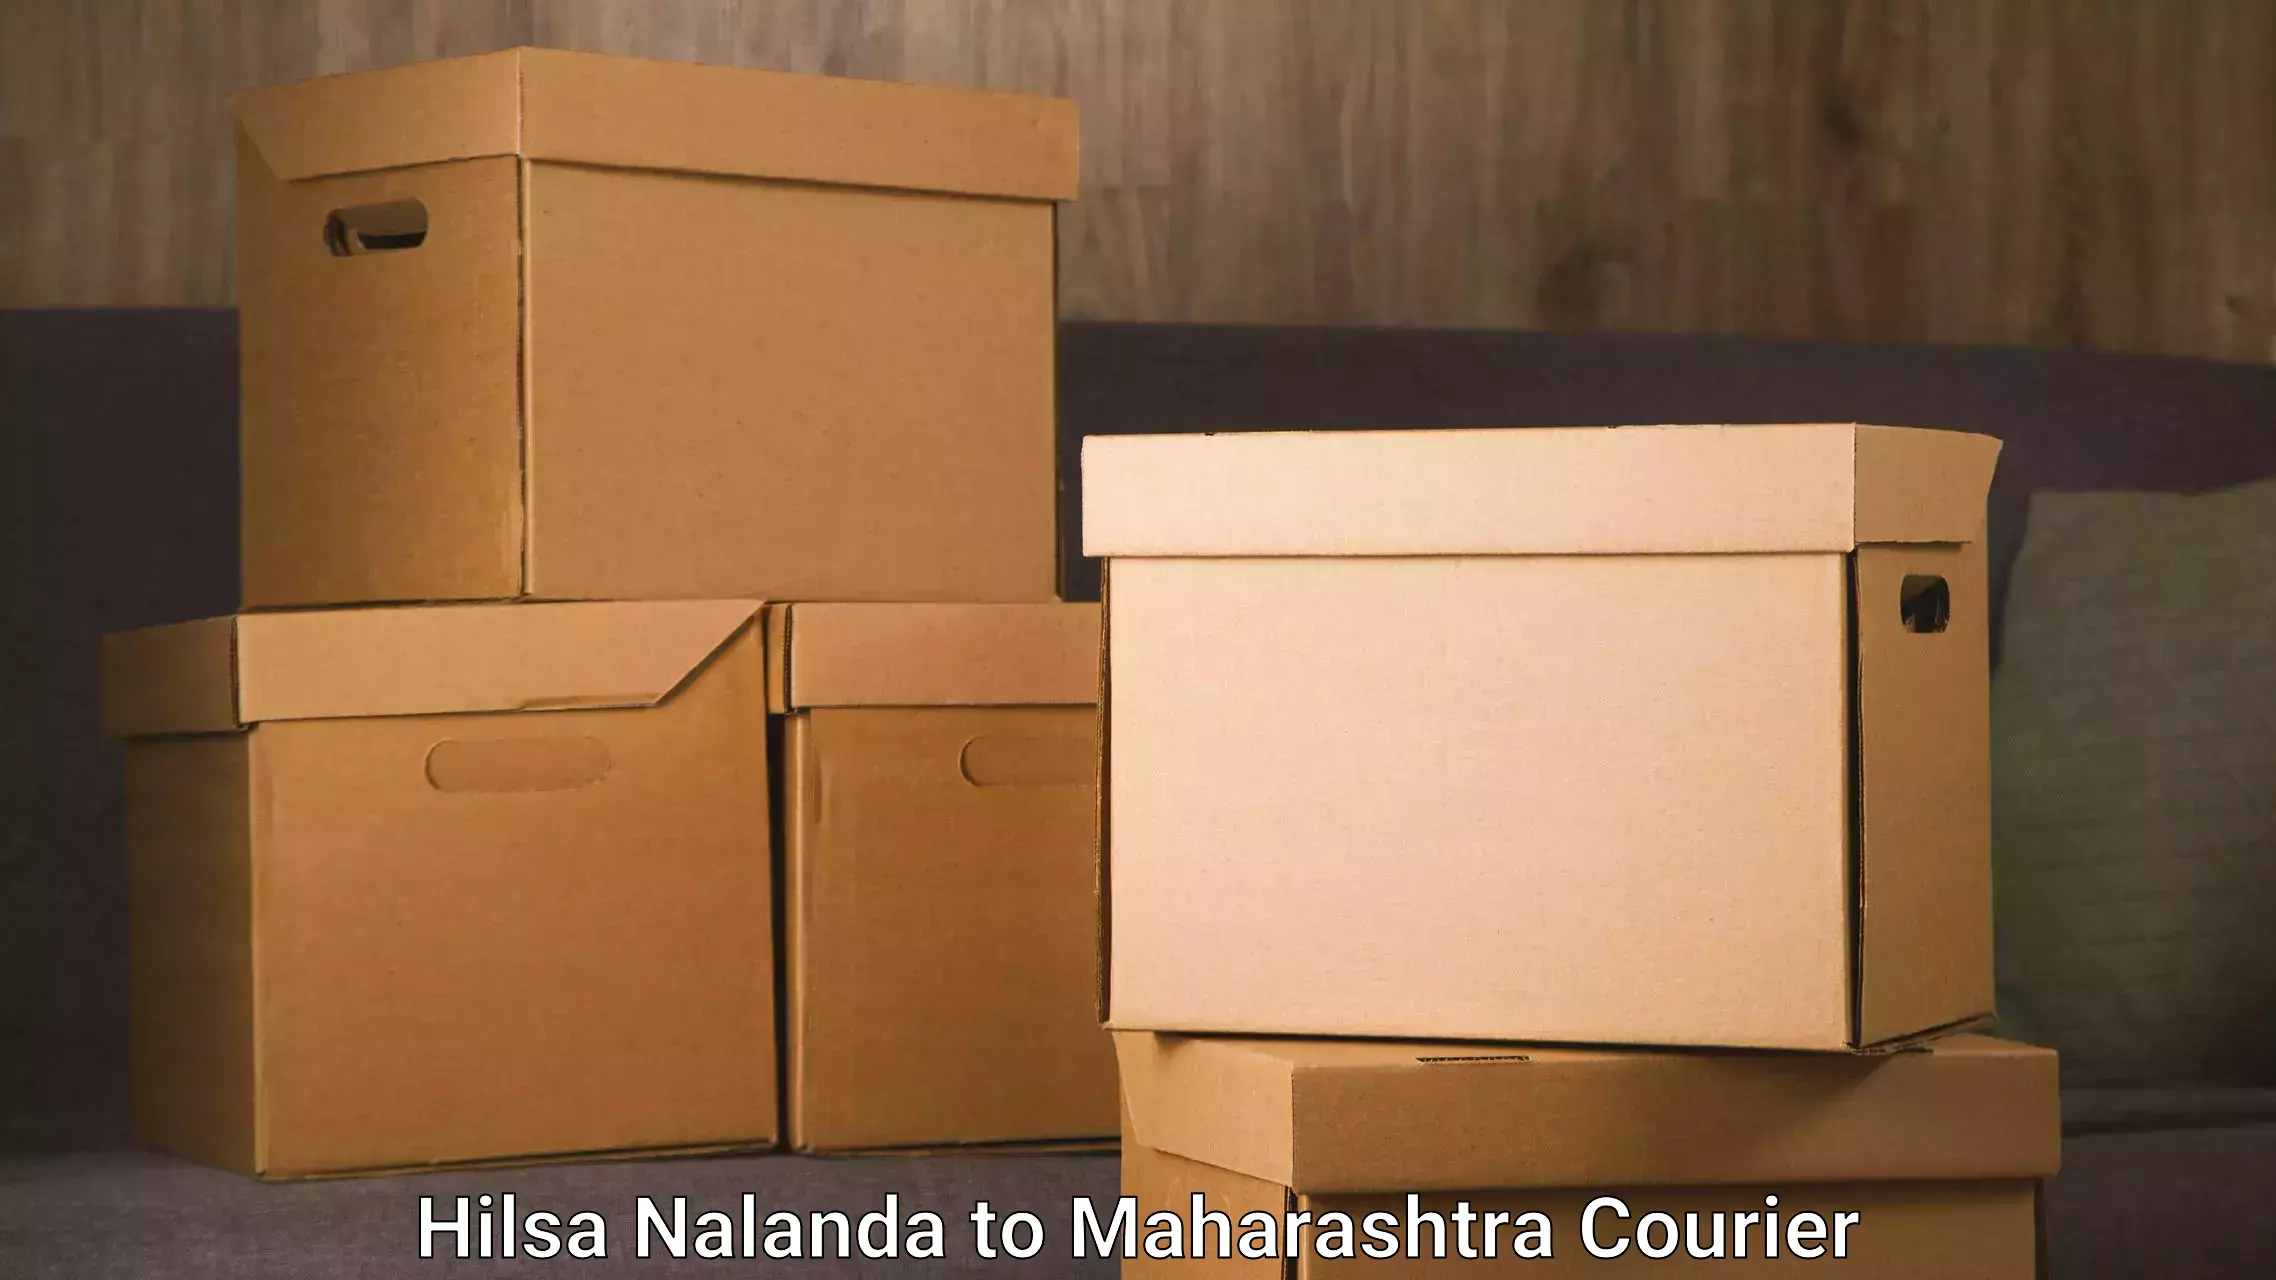 Furniture transport experts Hilsa Nalanda to Maharashtra